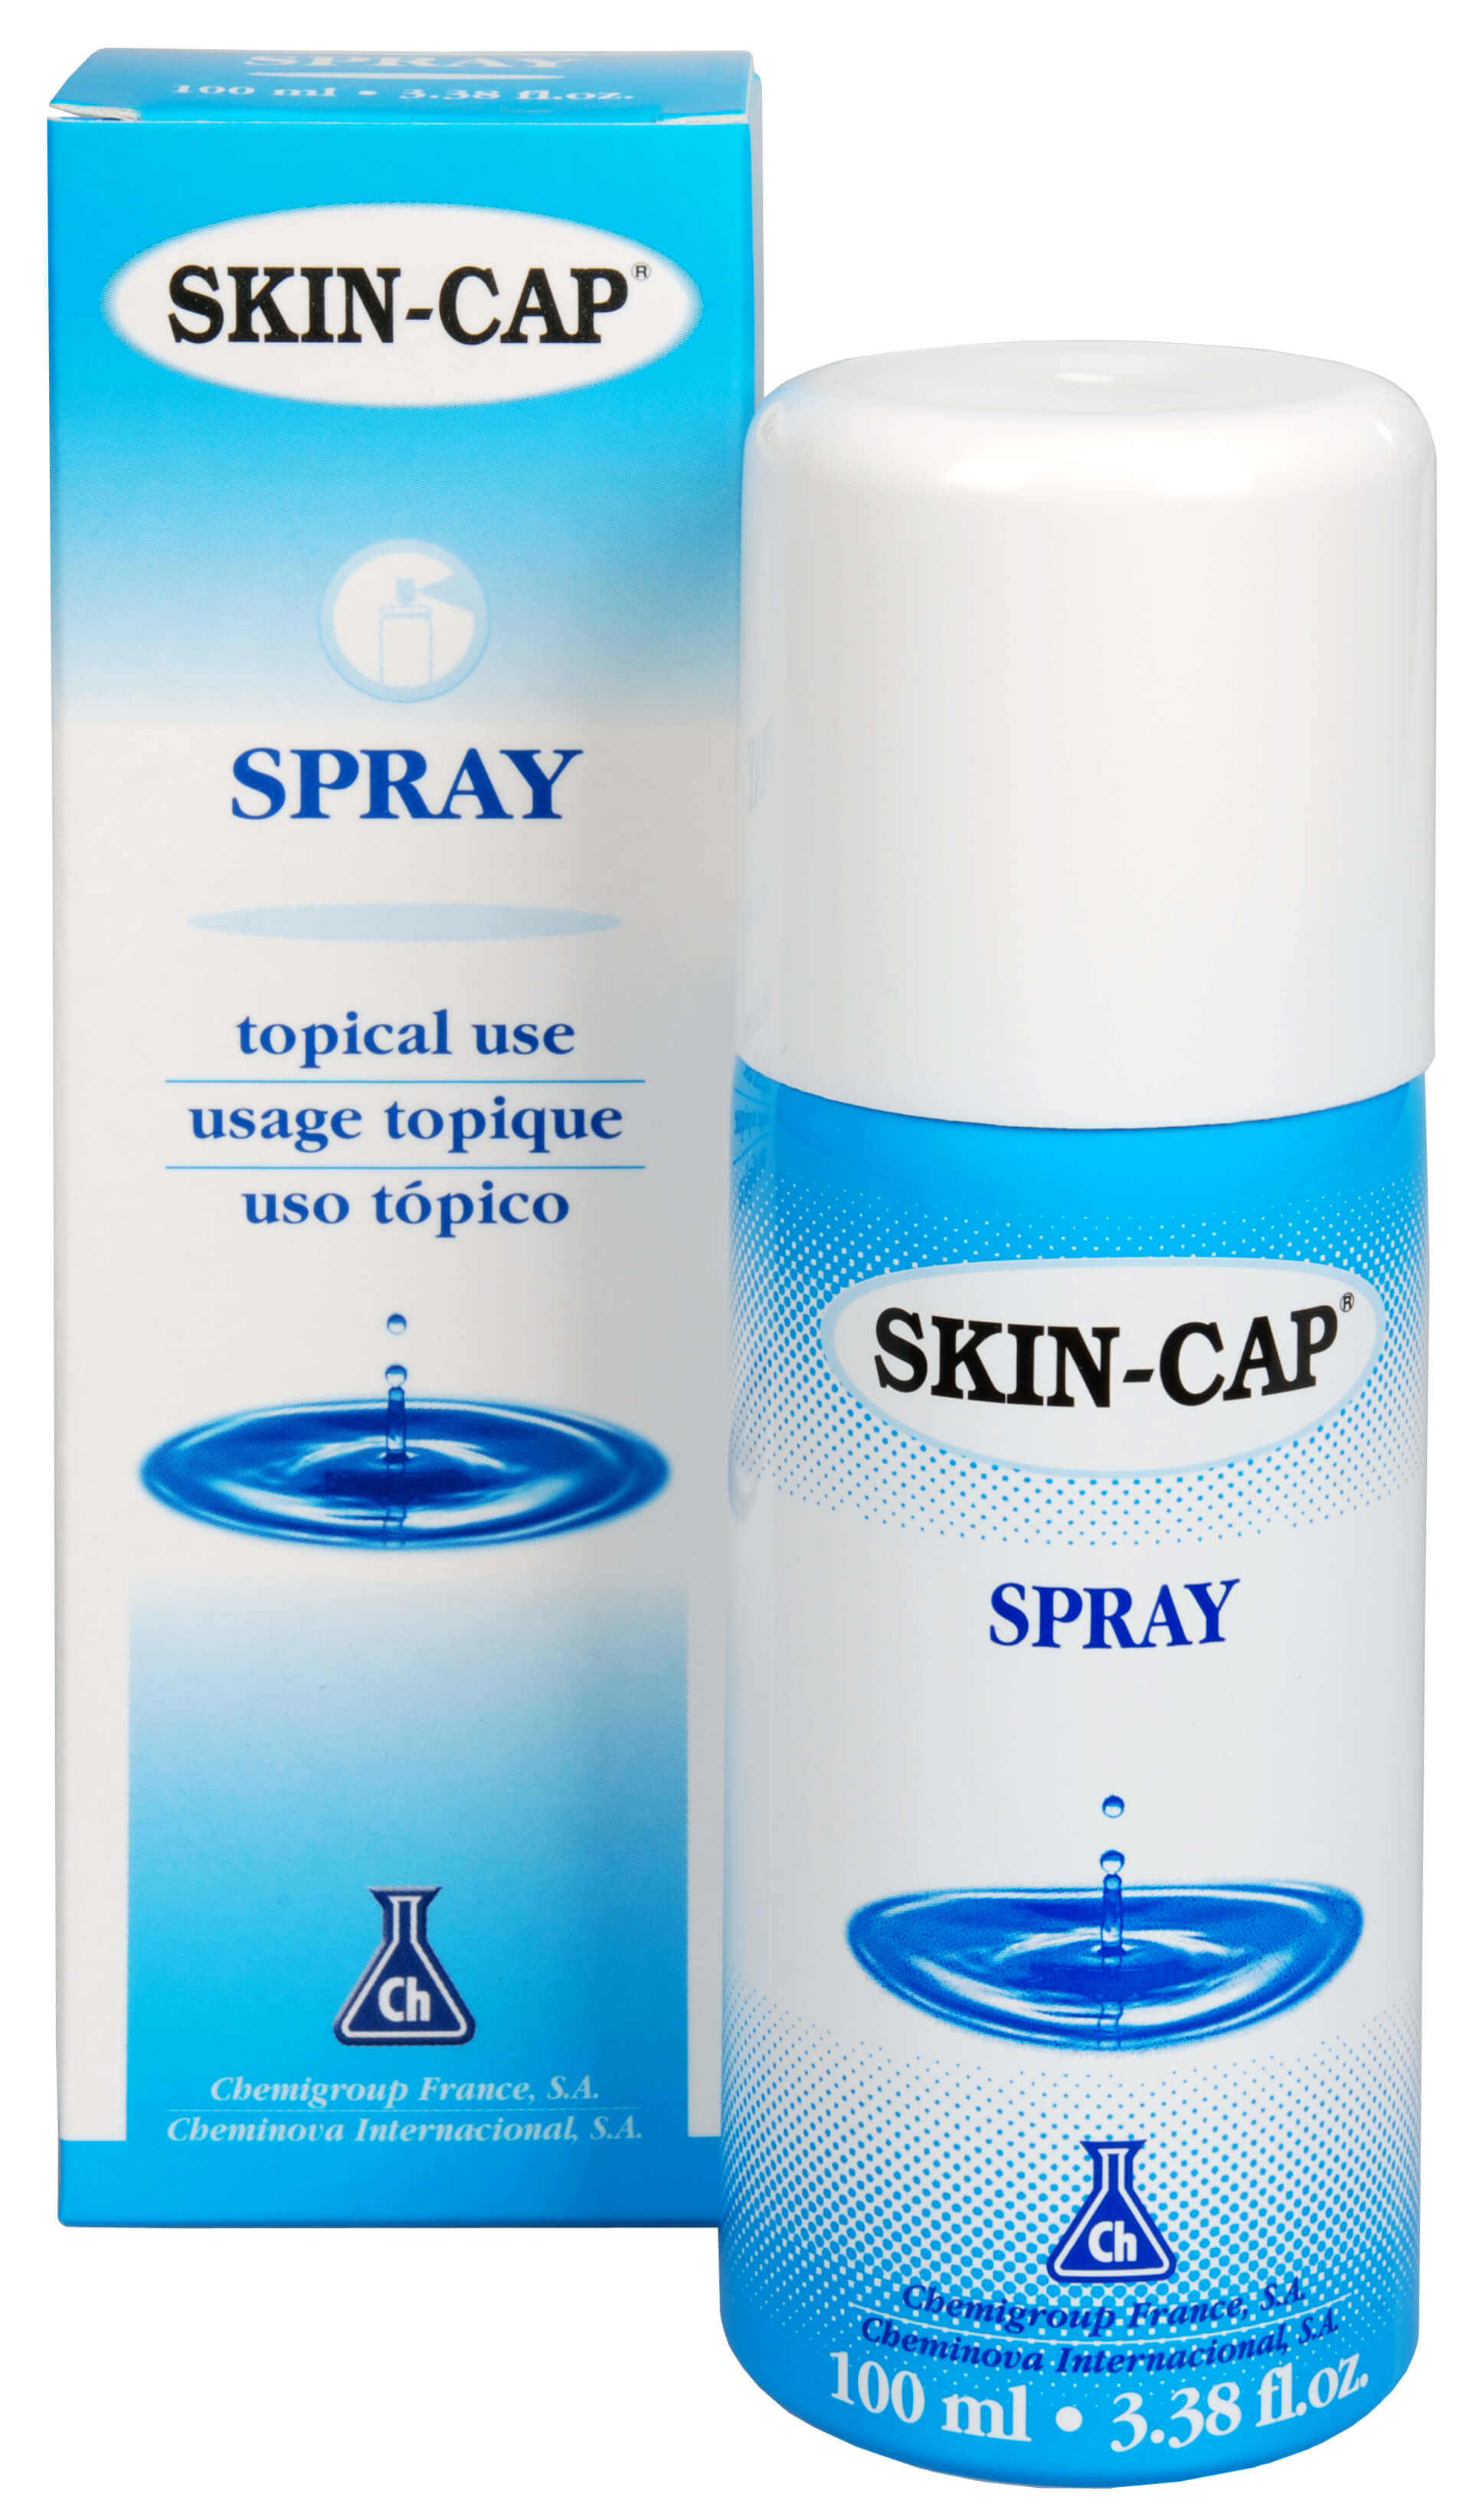 Skin-Cap Skin-Cap spray 100 ml